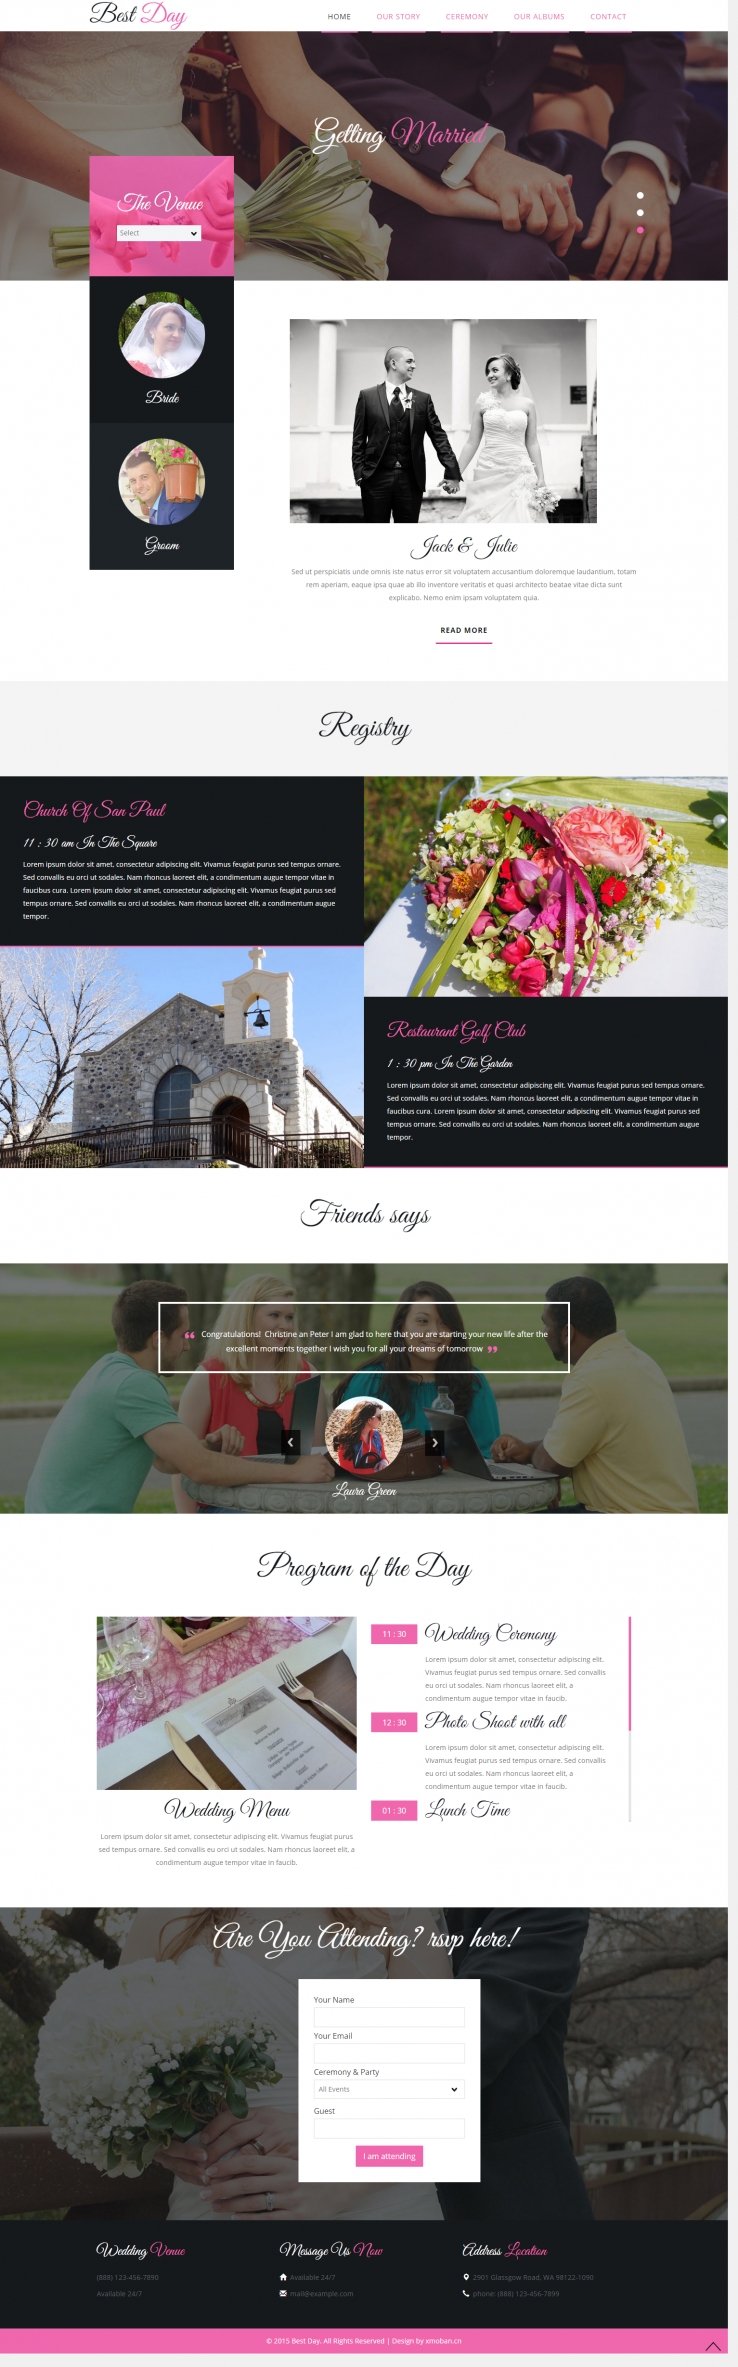 粉色扁平风格的婚礼婚庆企业网站源码下载